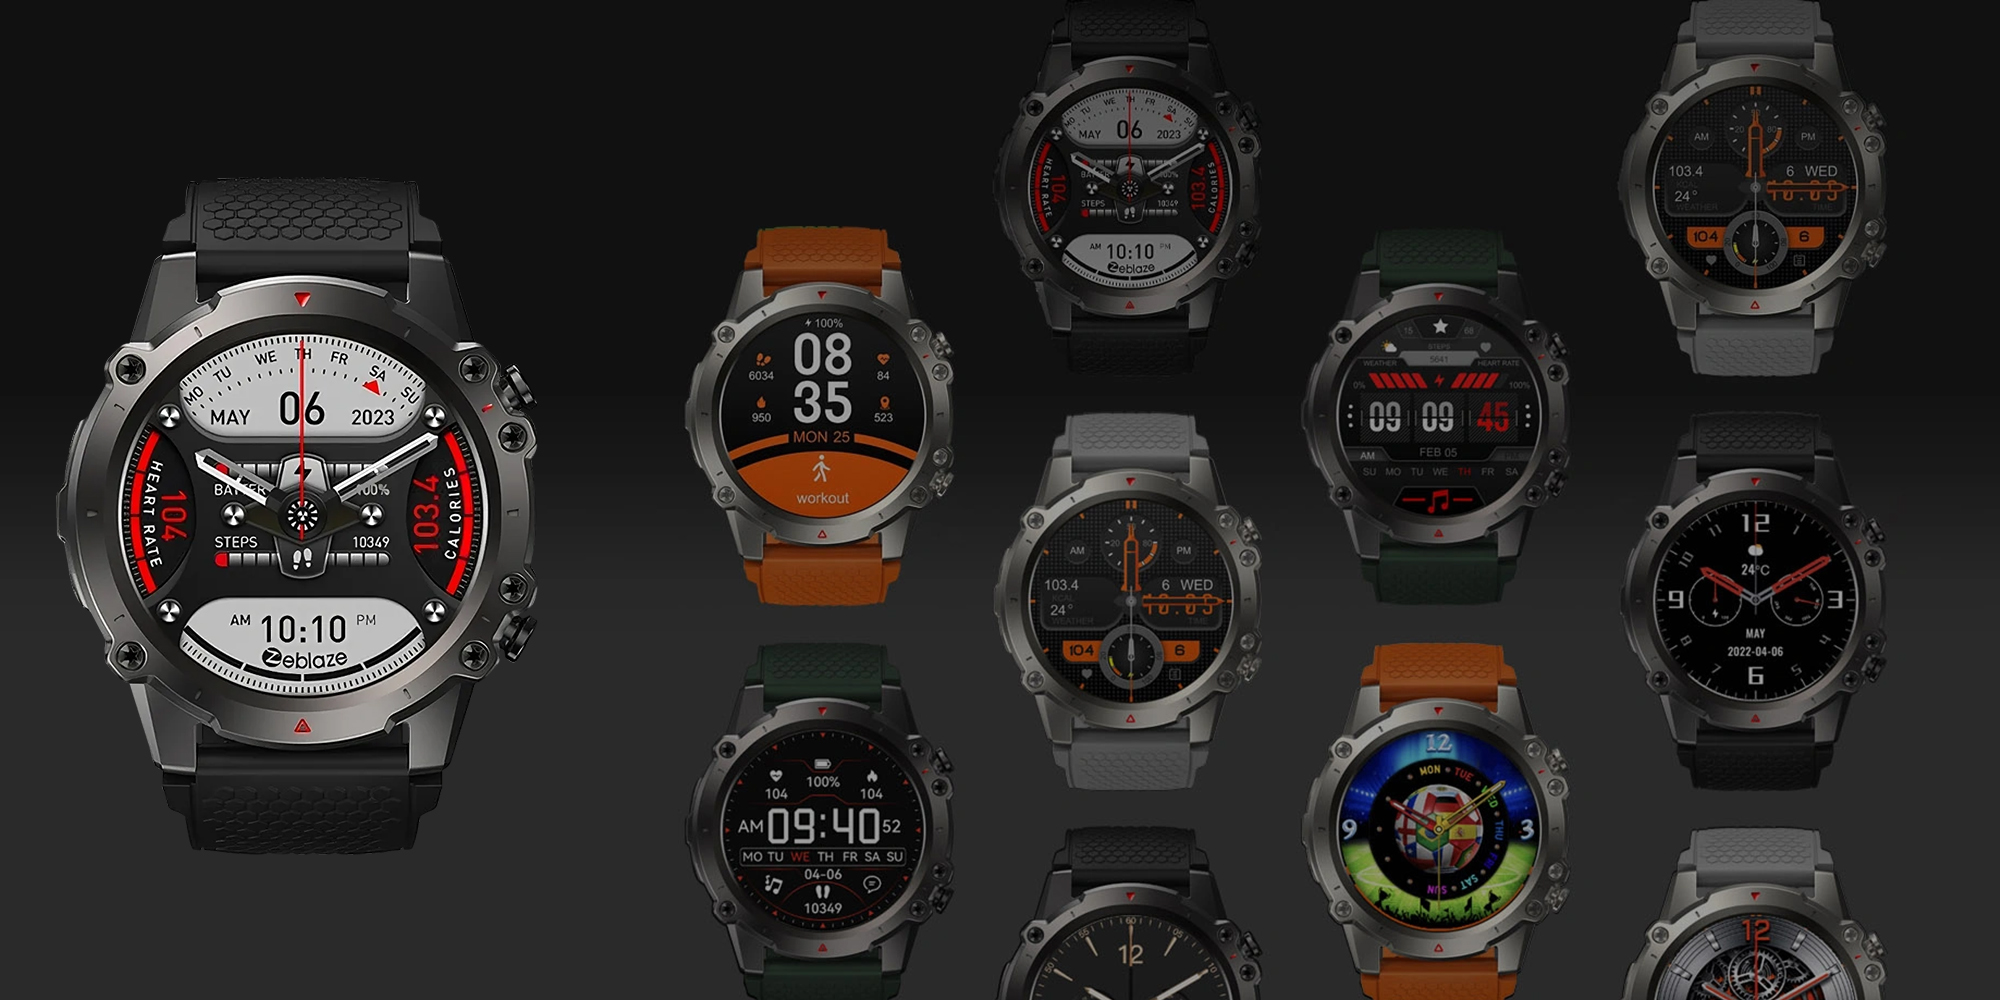 Smartwatch Zeblaze Vibe 7 Lite - czarny